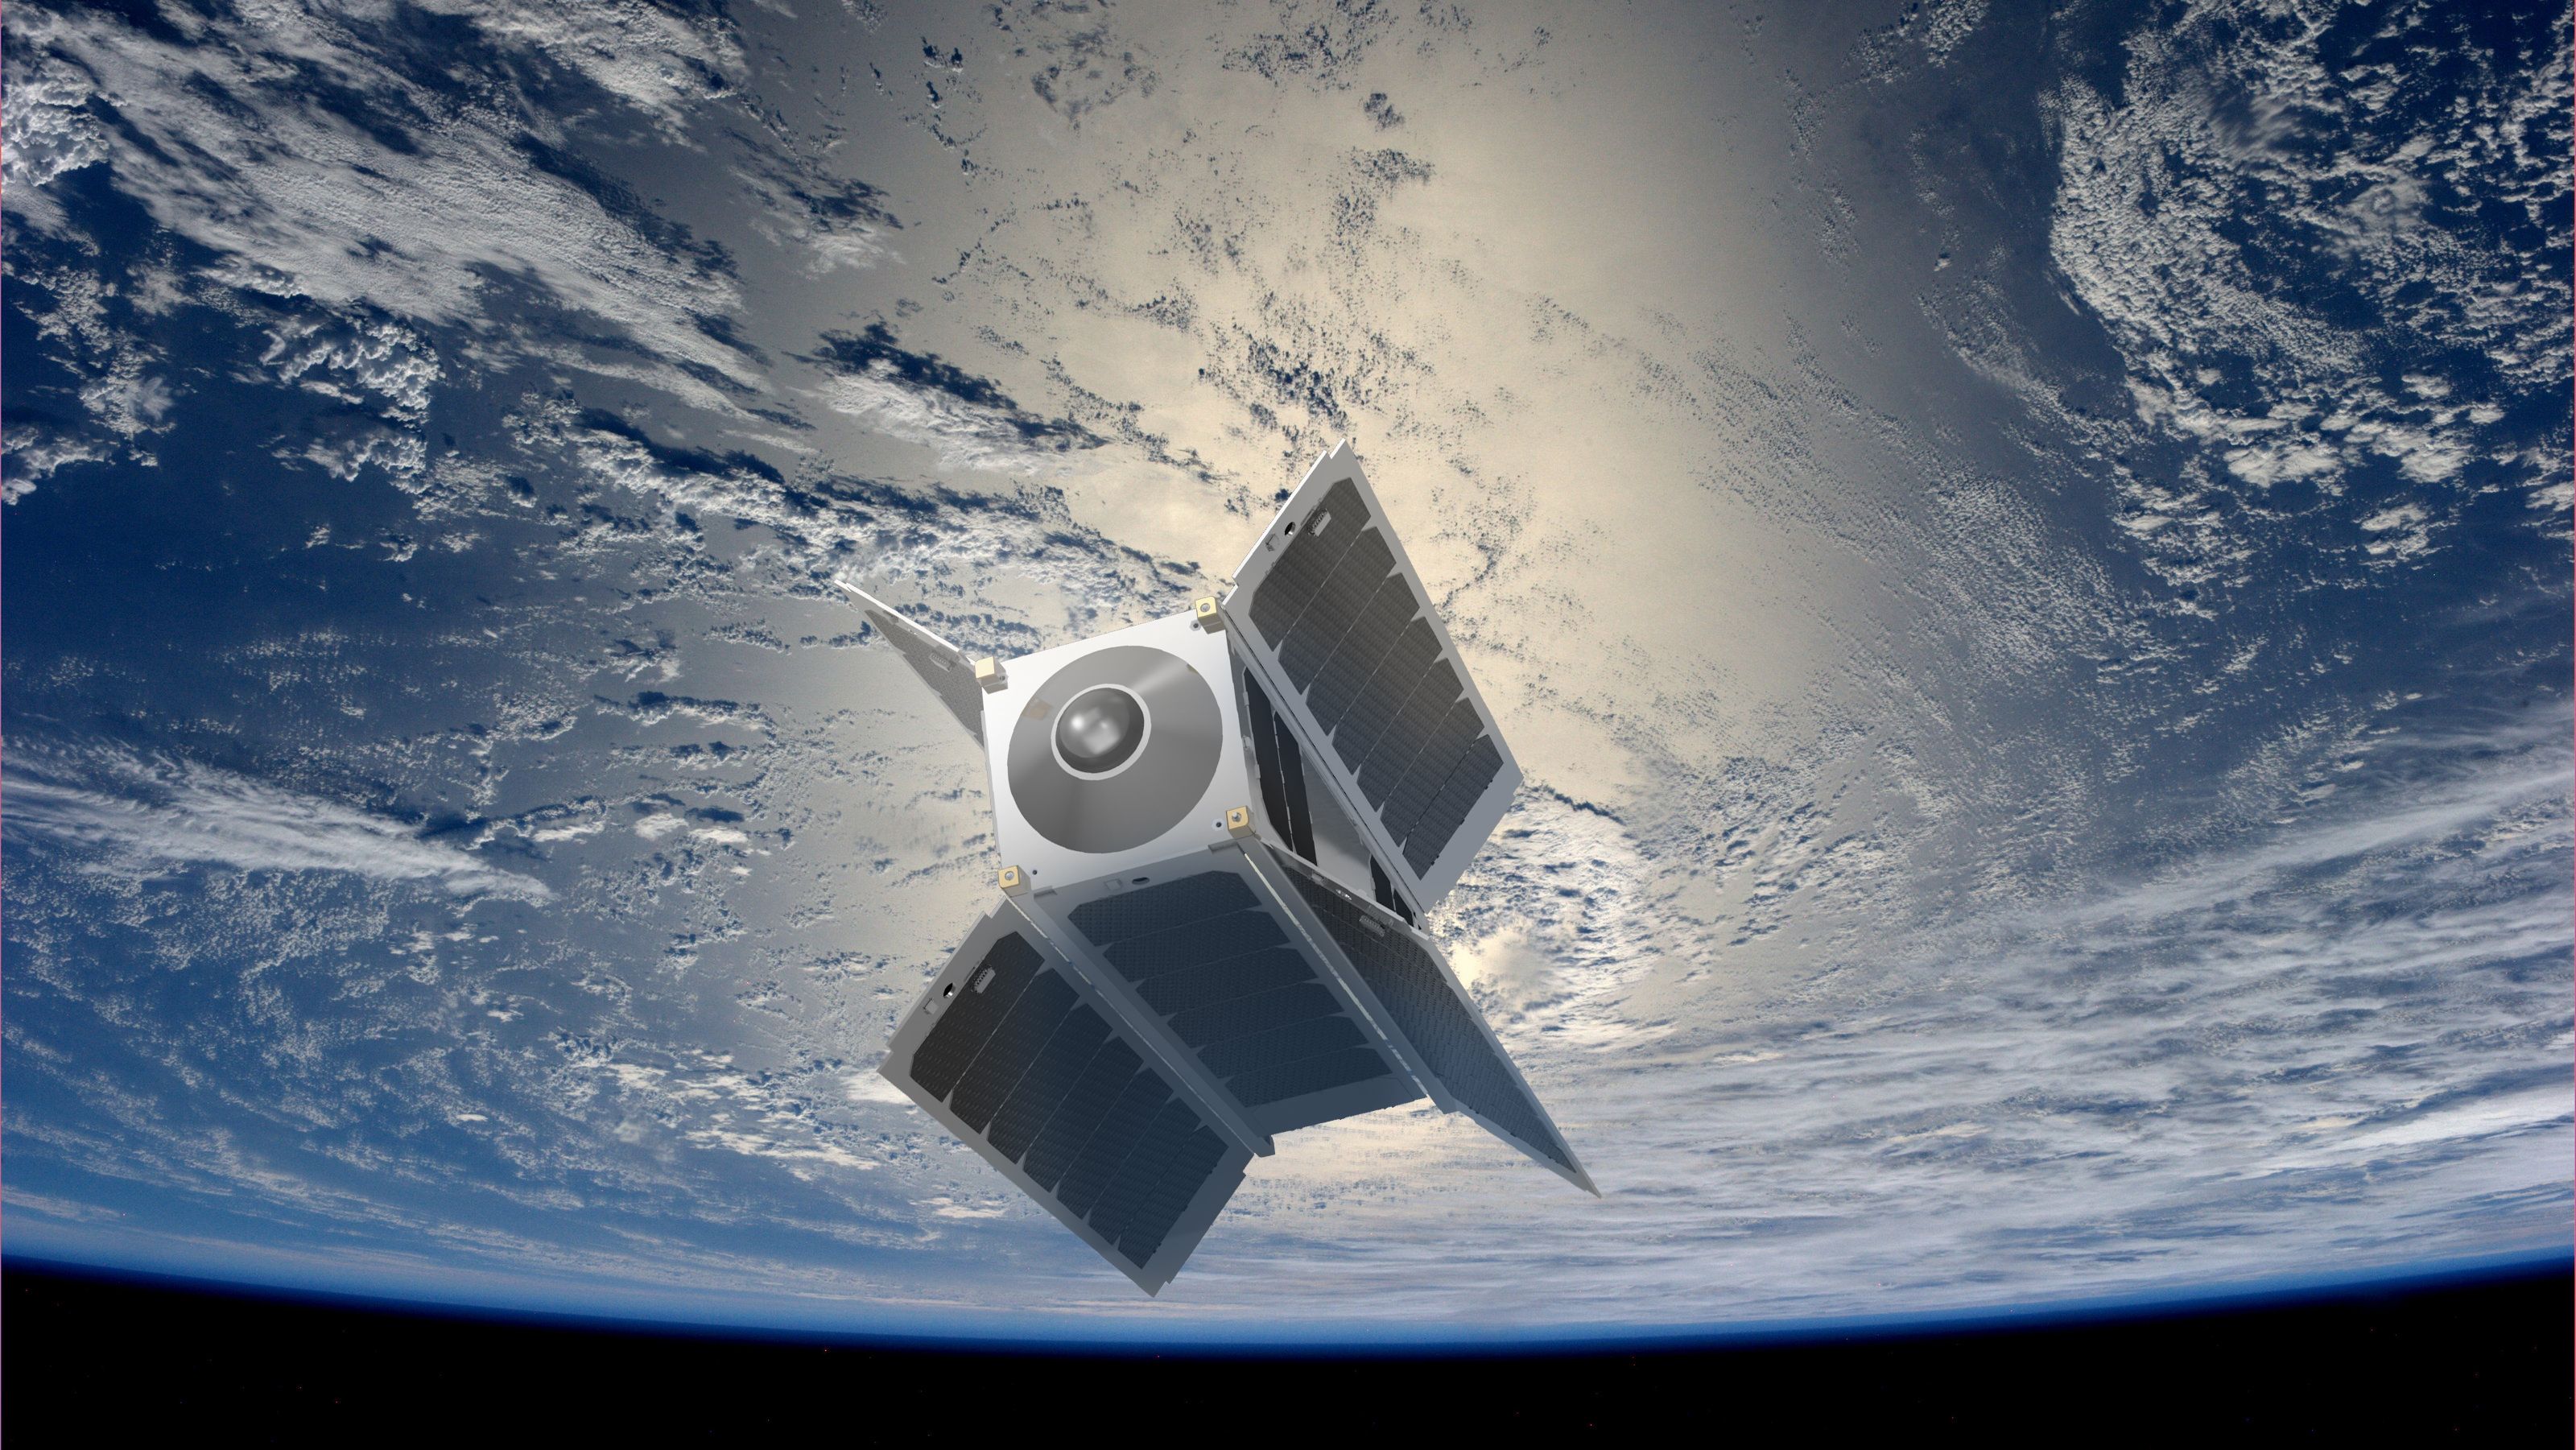 SpaceVR